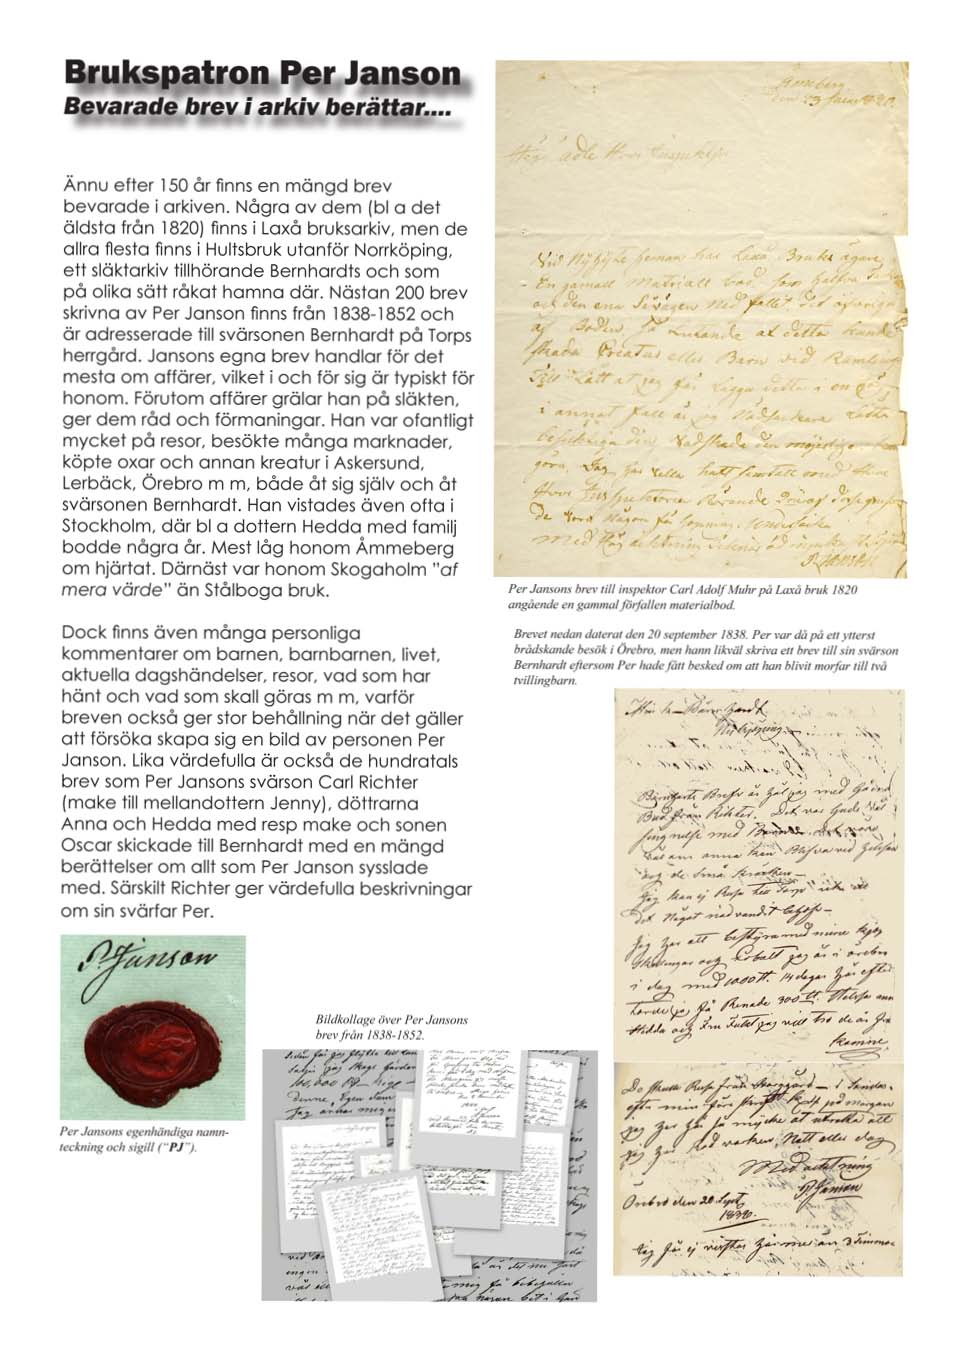 Bevarade brev; arkiv berättar... Ännu eller 150 ar finns en mängd brev bevarade i arkiven. Nagra av dem (bl a det äldsta från 1820) finns i laxå bruksarkiv.